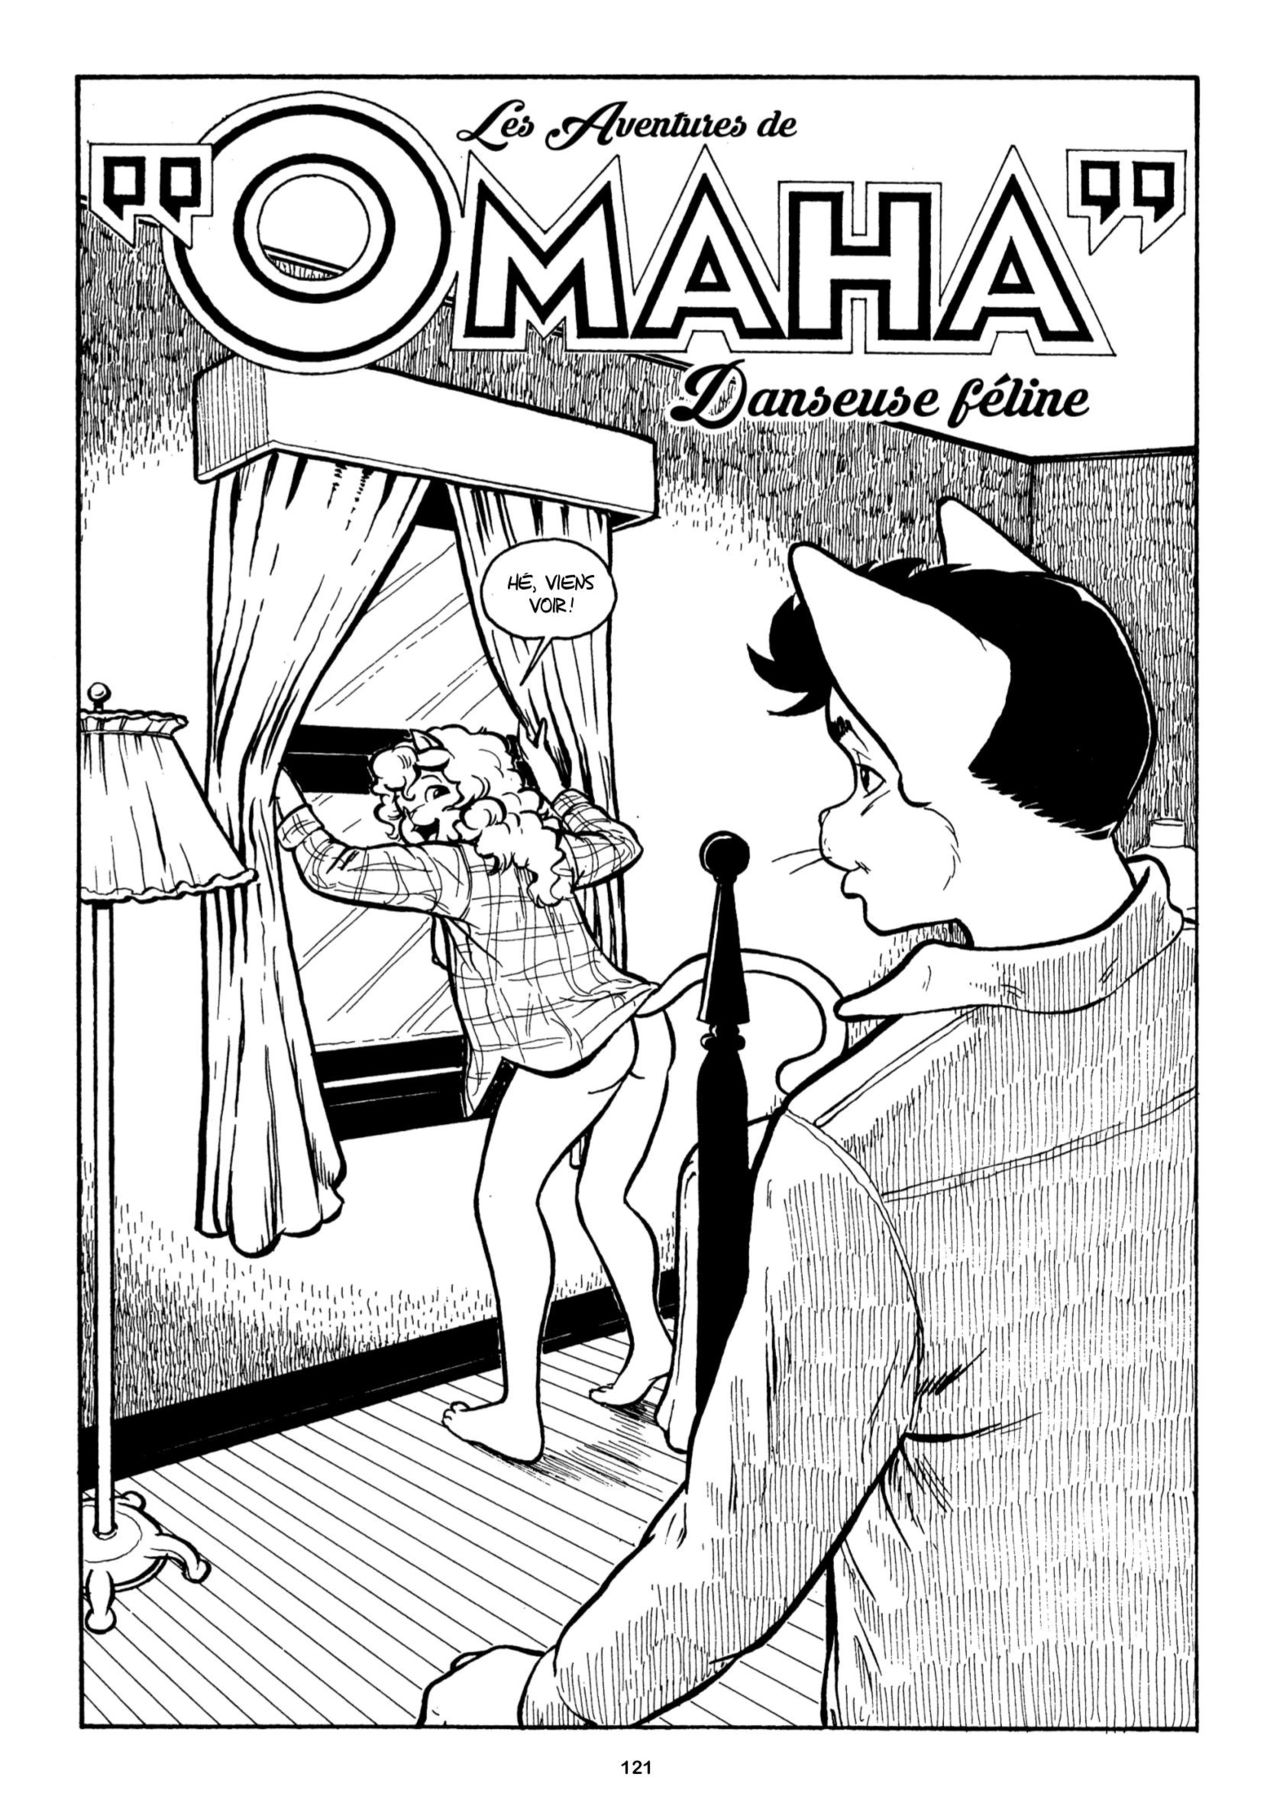 Les aventures complètes de «Omaha» danseuse féline 03 numero d'image 122